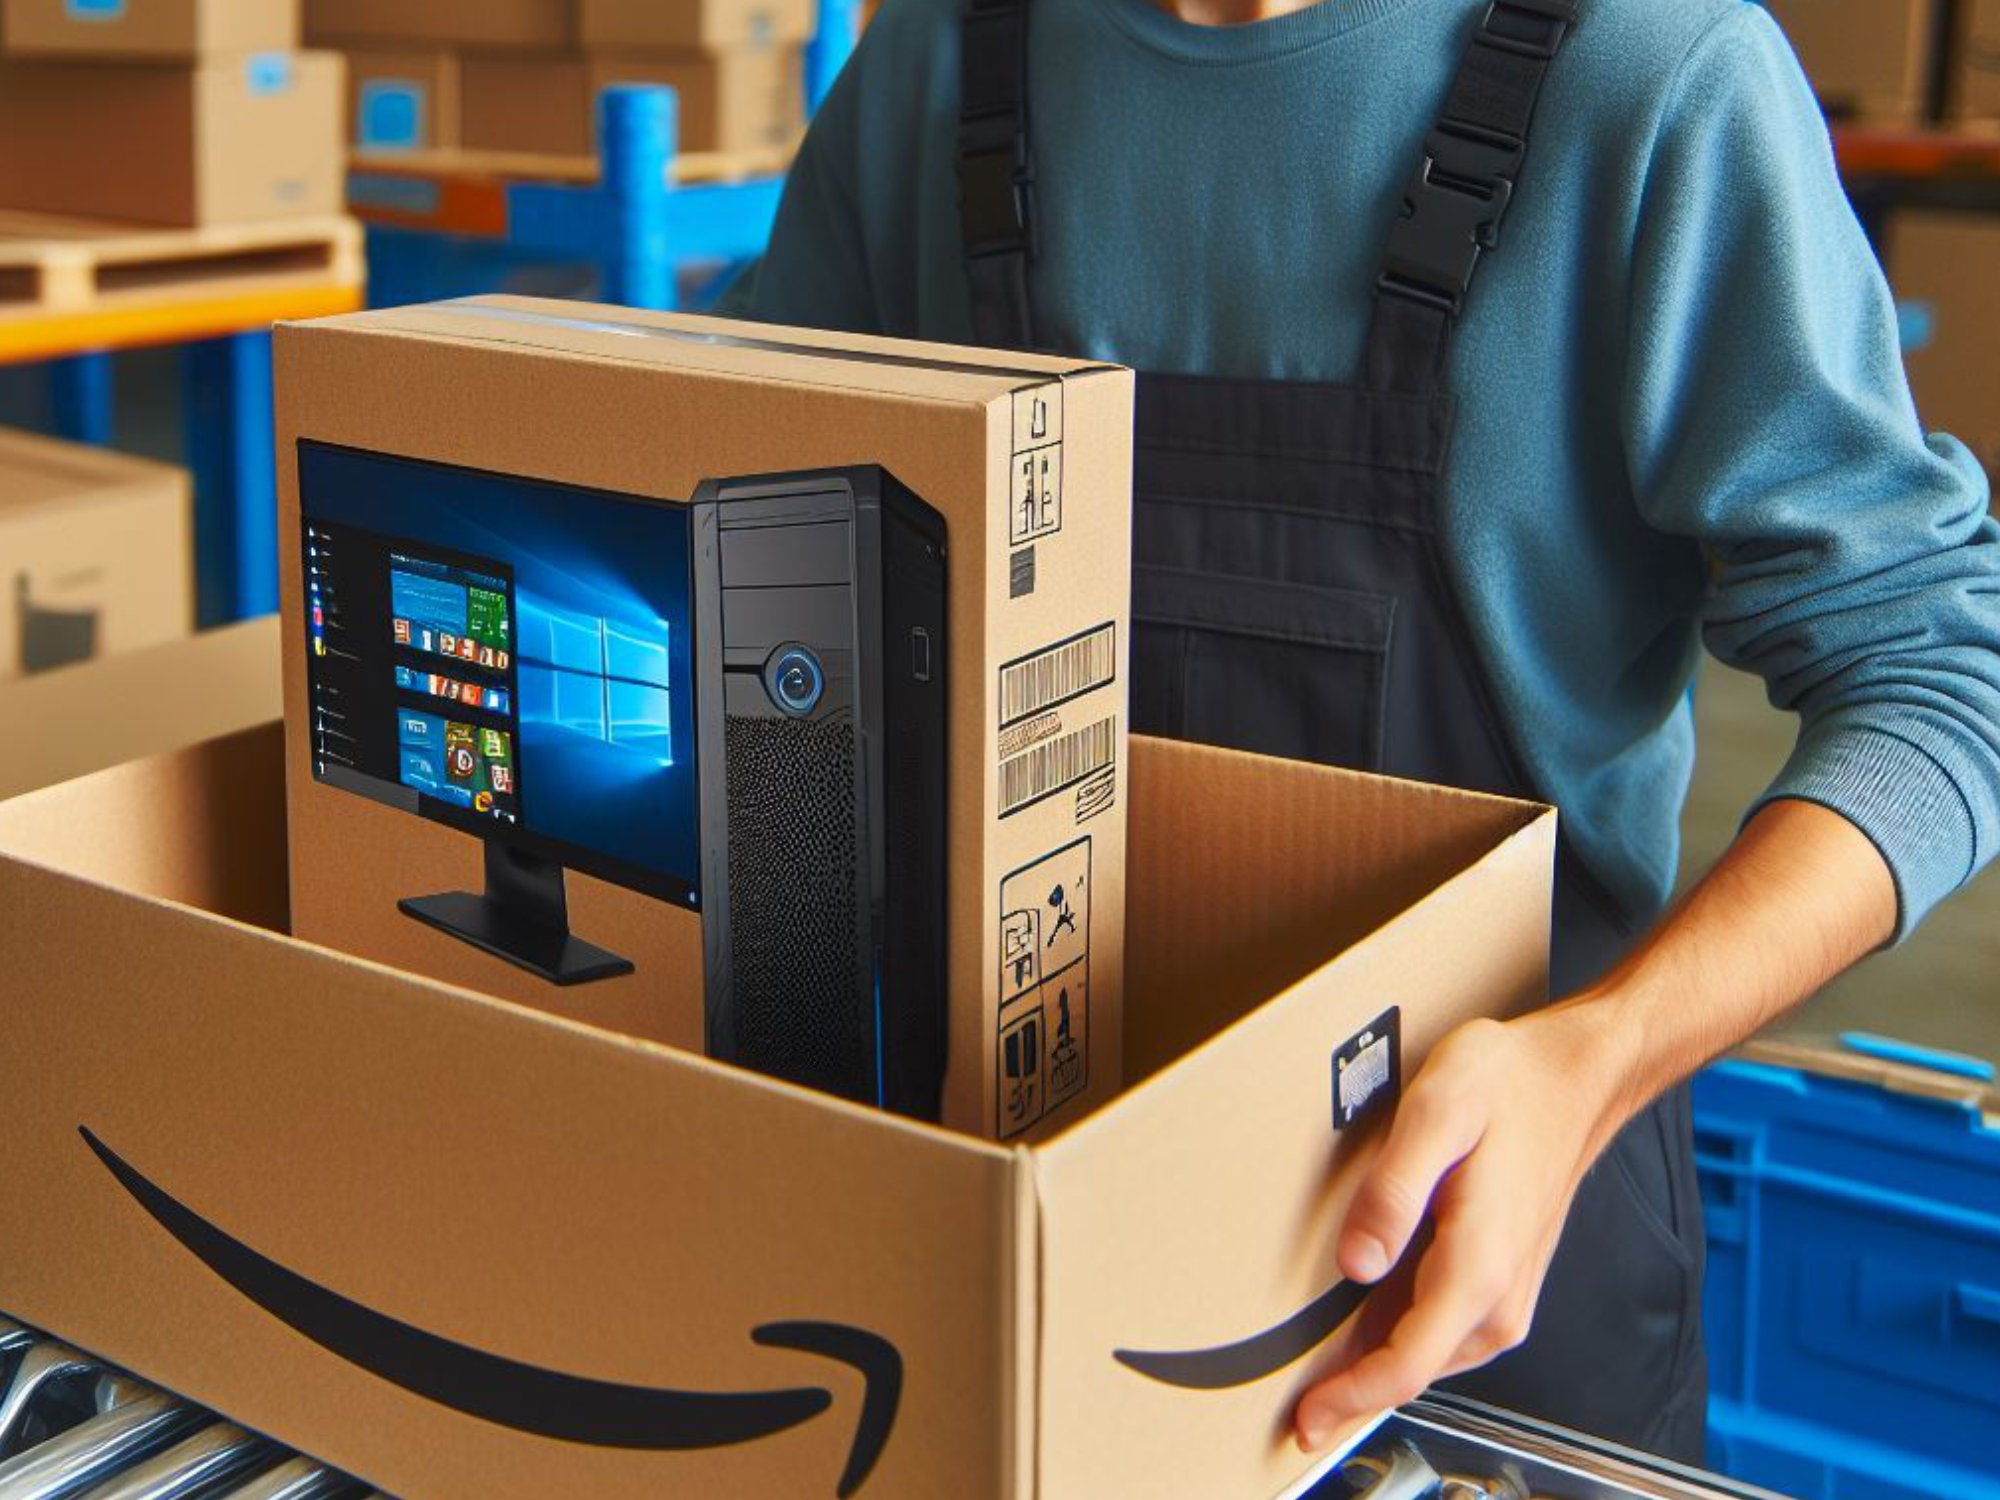 #Bei Amazon gekaufte Computer mit Viren verseucht: Diese Marken sind betroffen